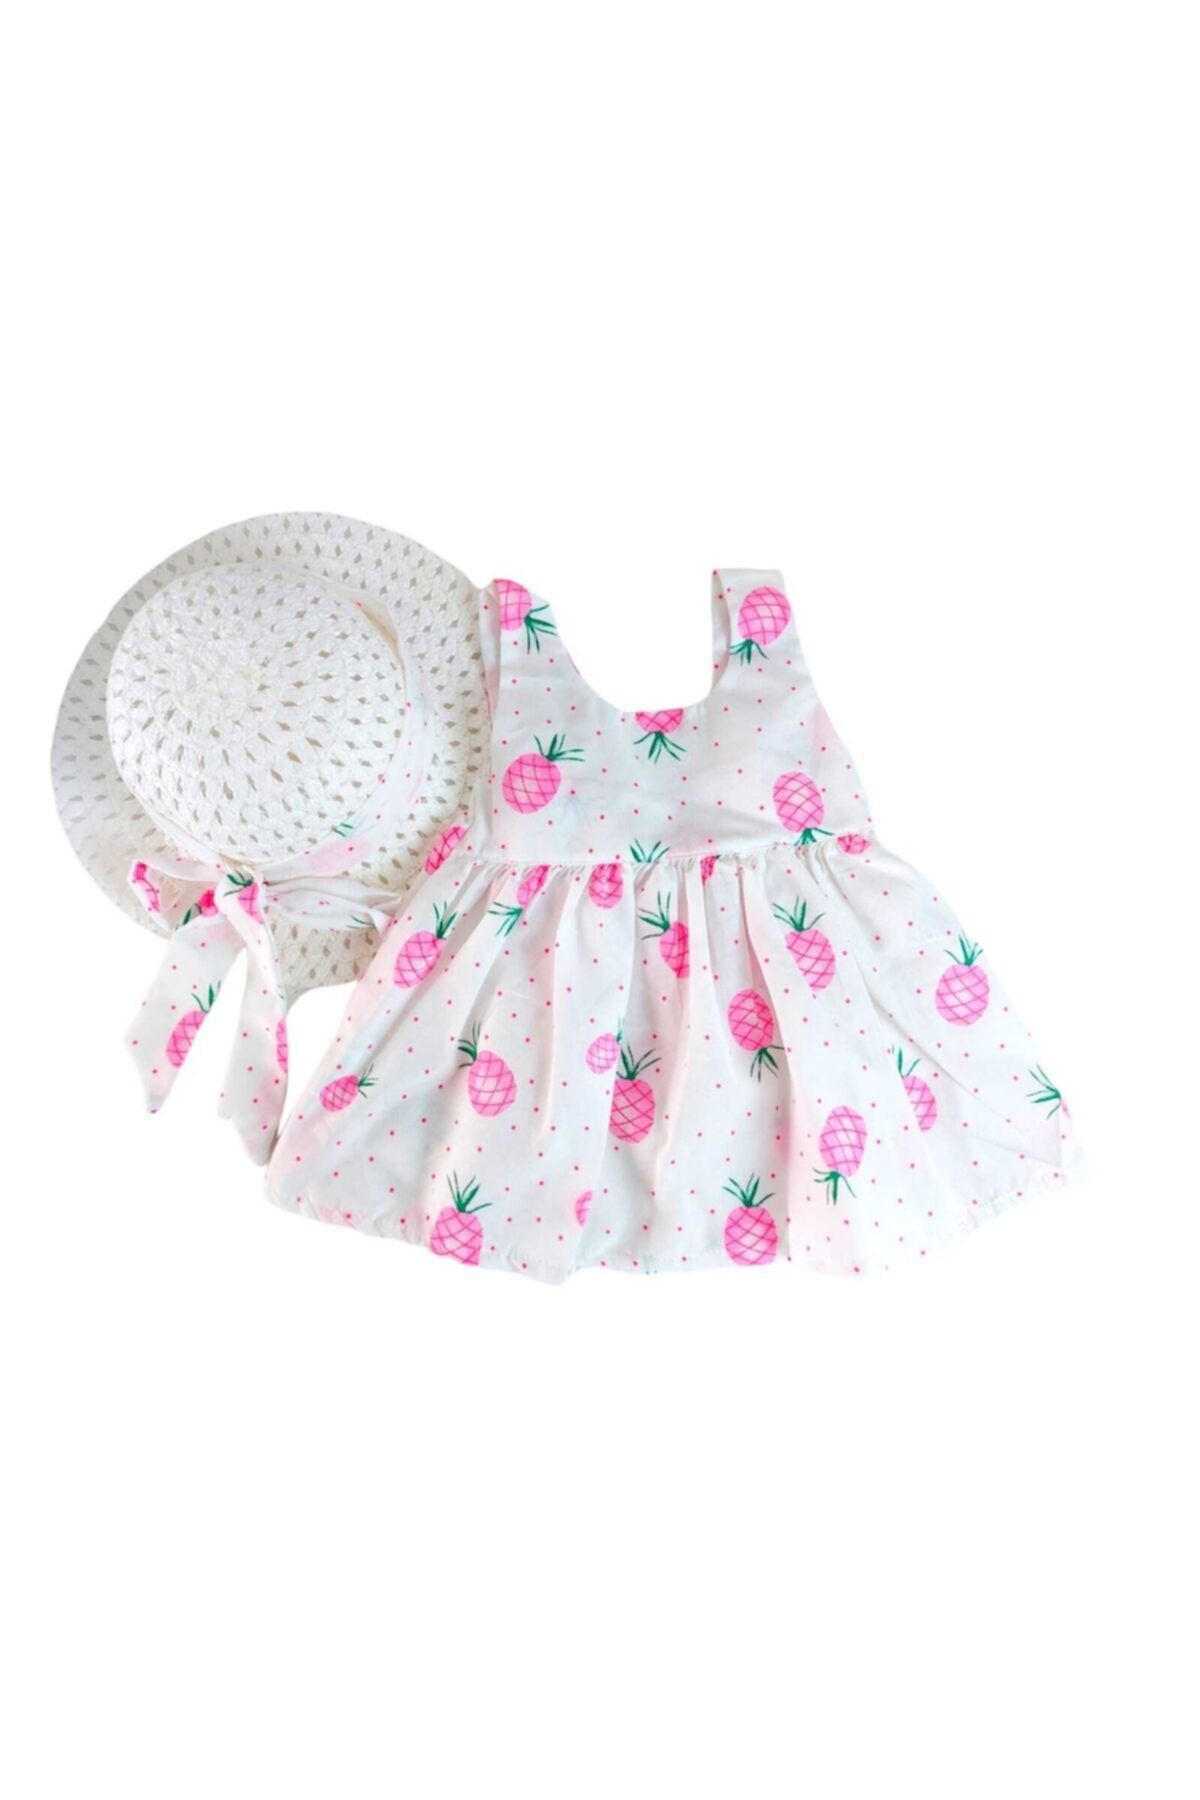 Murat Baby Kız Bebek Ananaslı Elbise + Şapka